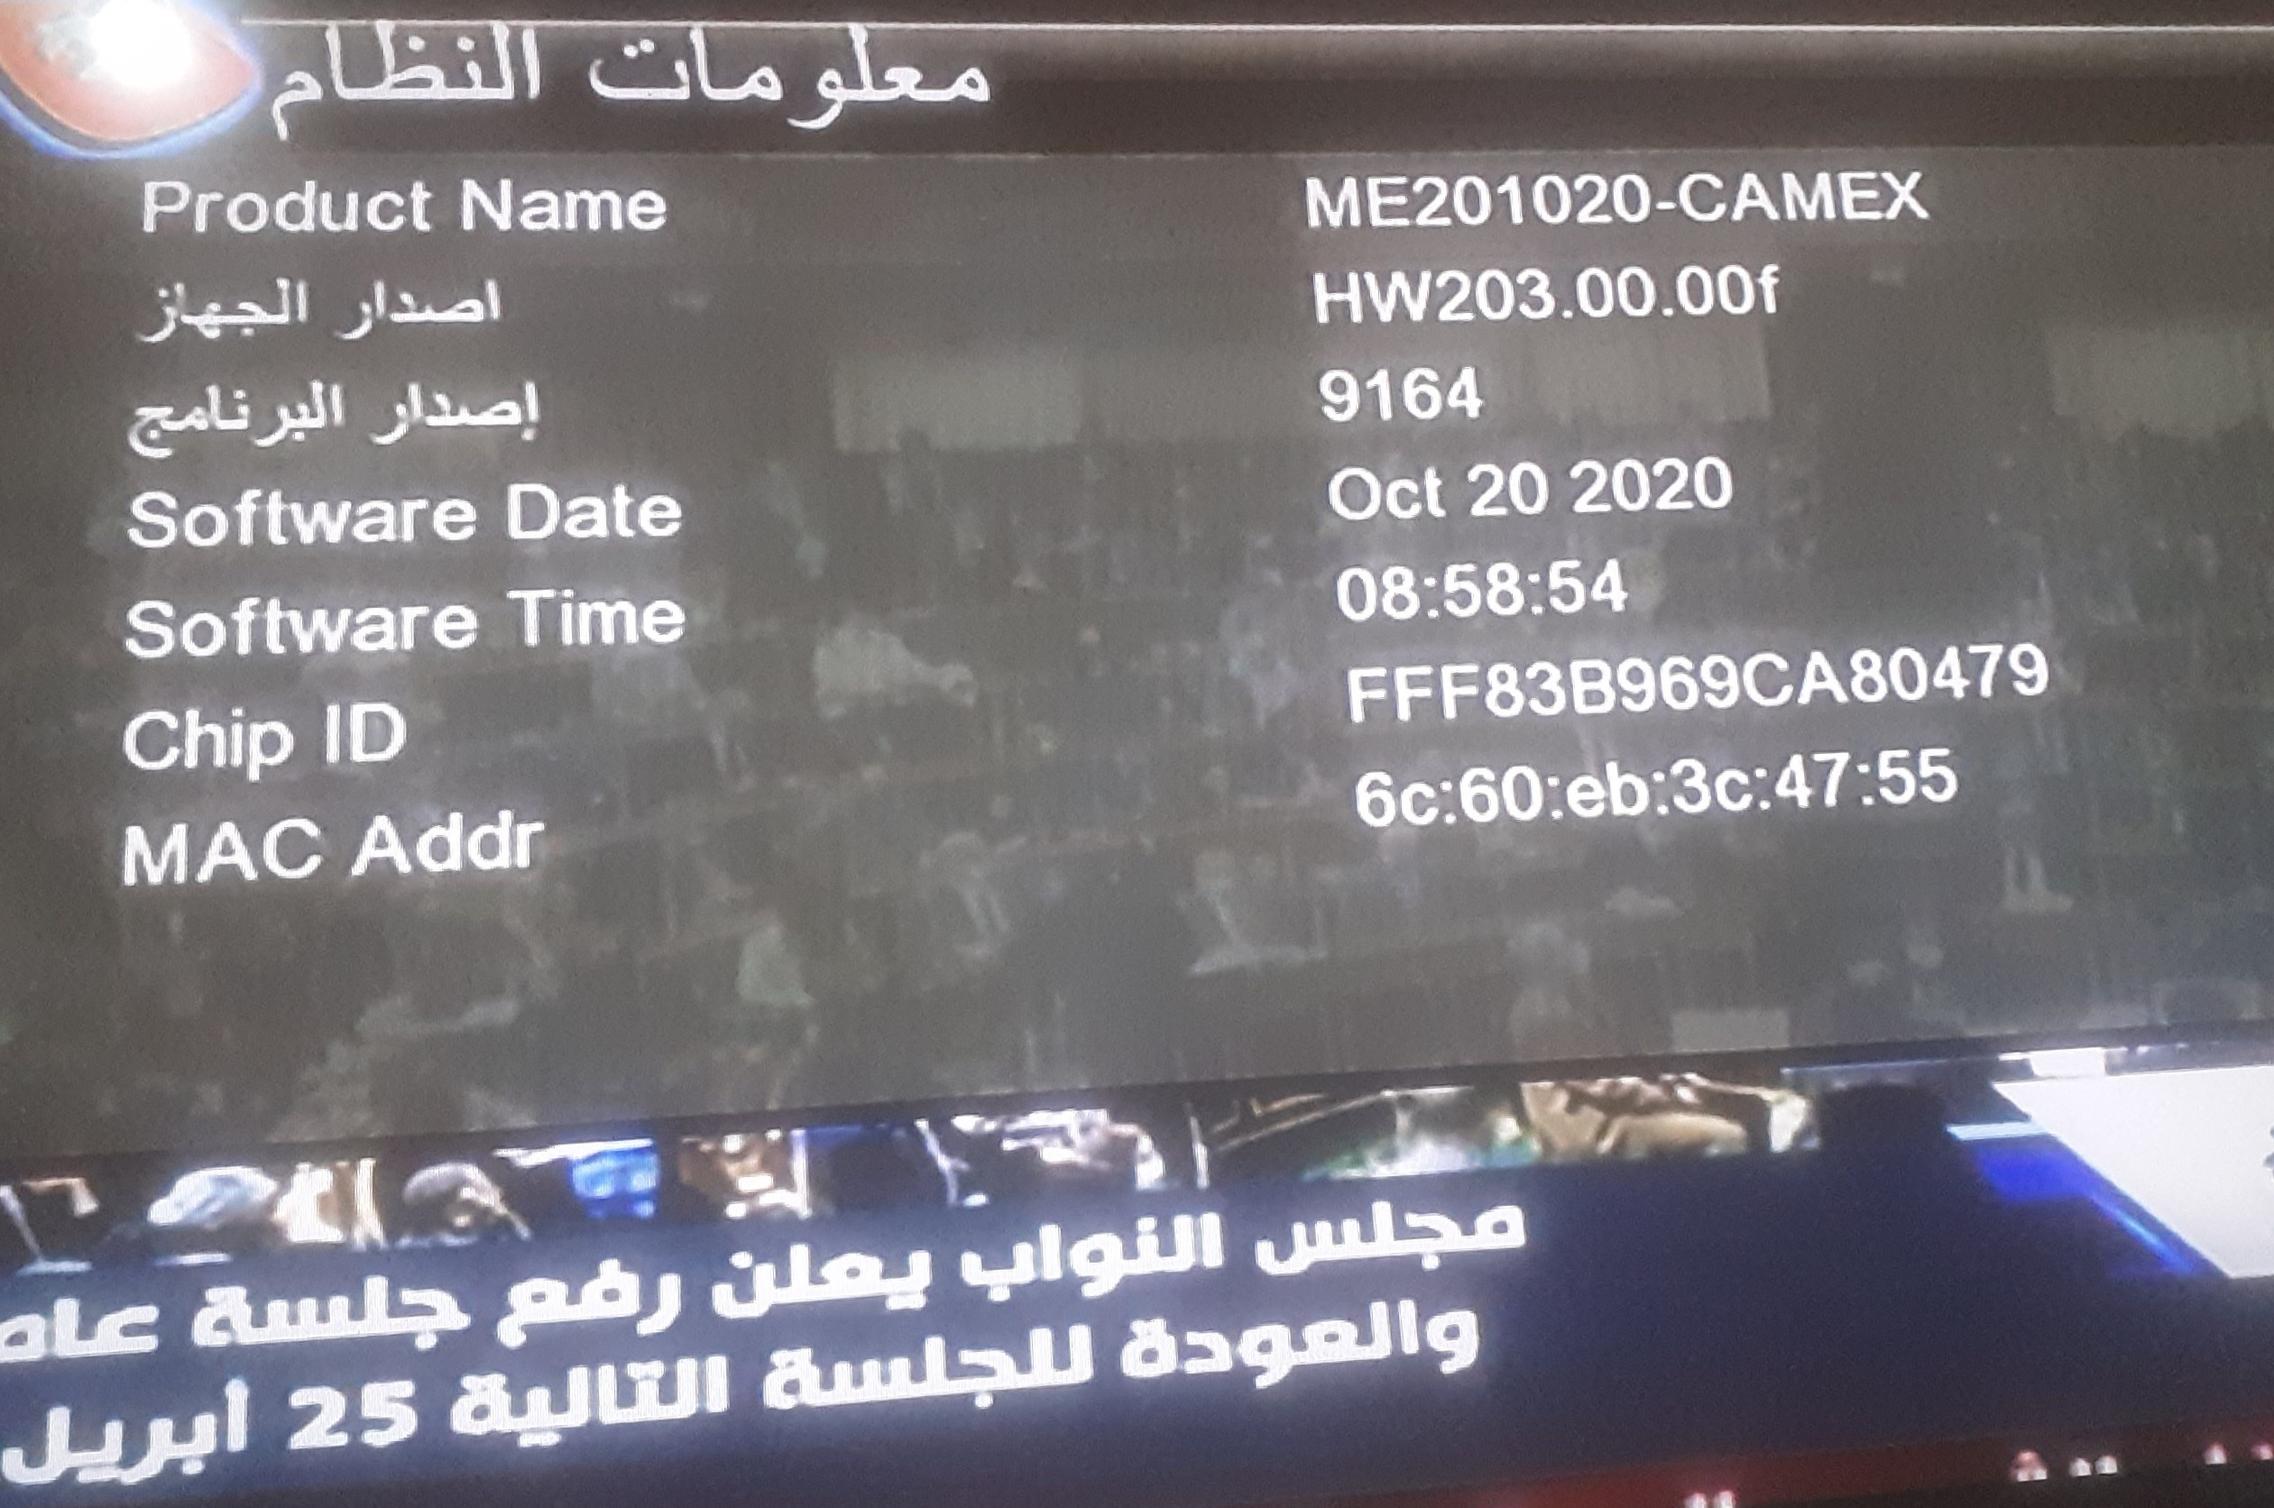 احدث ملف عربي REDBOX RX-9000 HD MINI وroyal 999 الاحمرالمزود بـ2 شاشة رقمية و CAMEX الاسود 7-12-2023 P_24840jjjg2